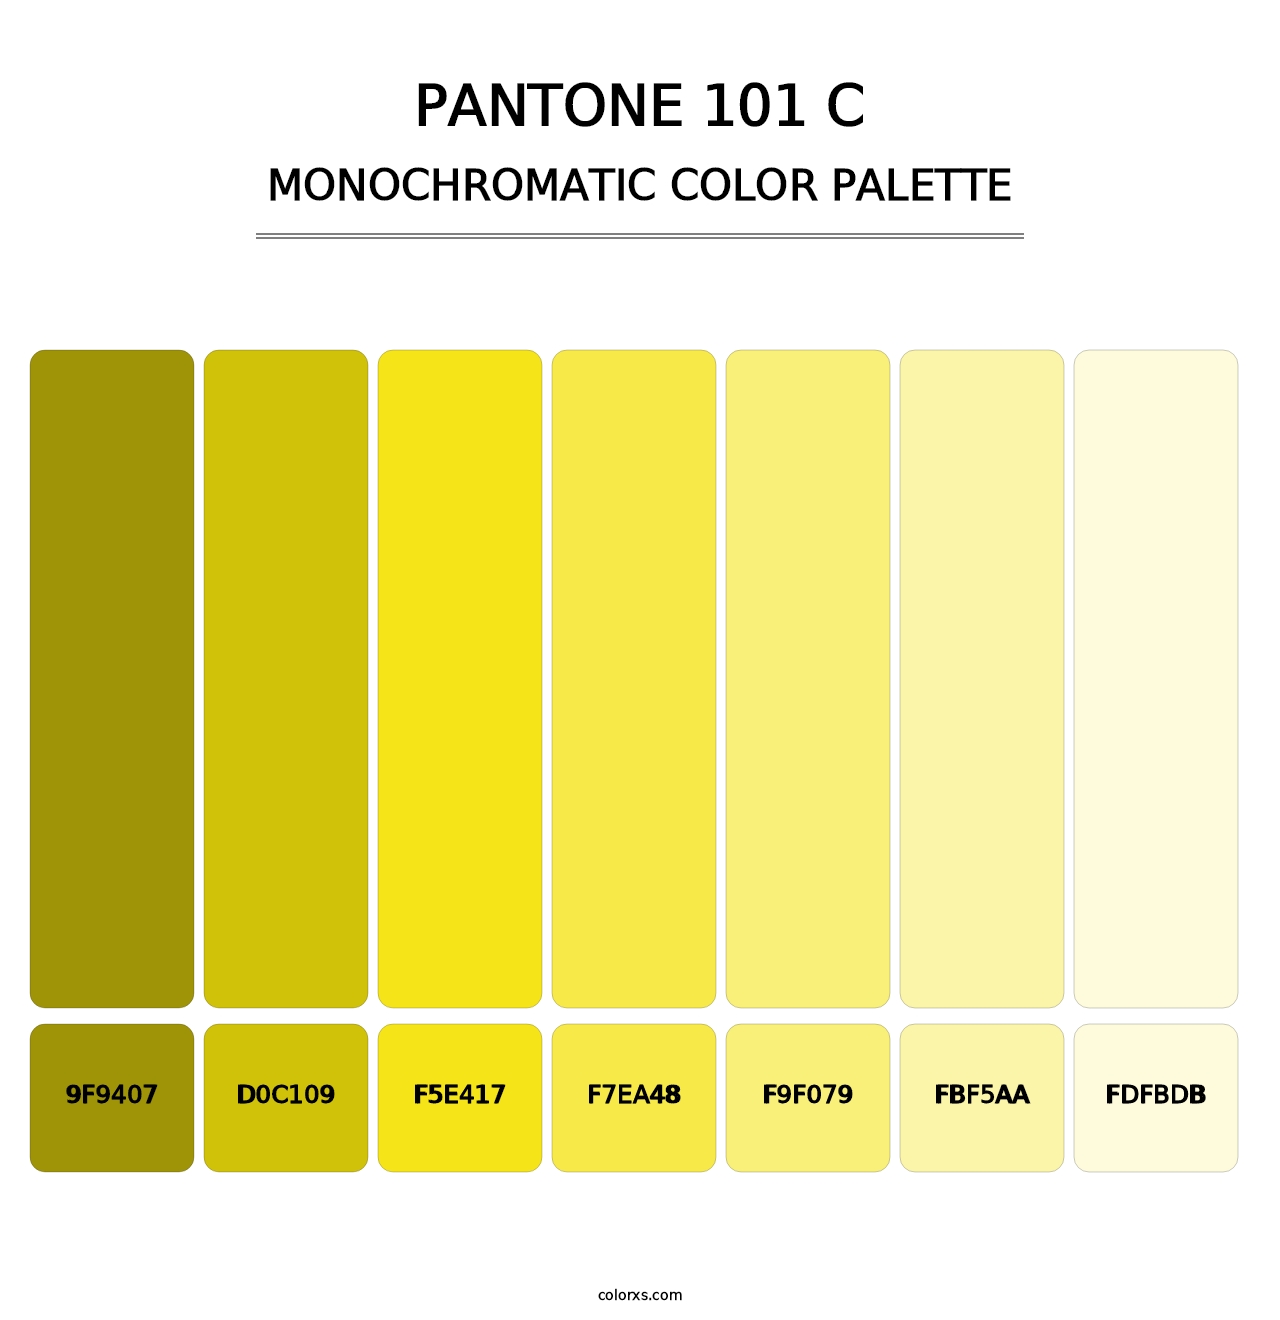 PANTONE 101 C - Monochromatic Color Palette